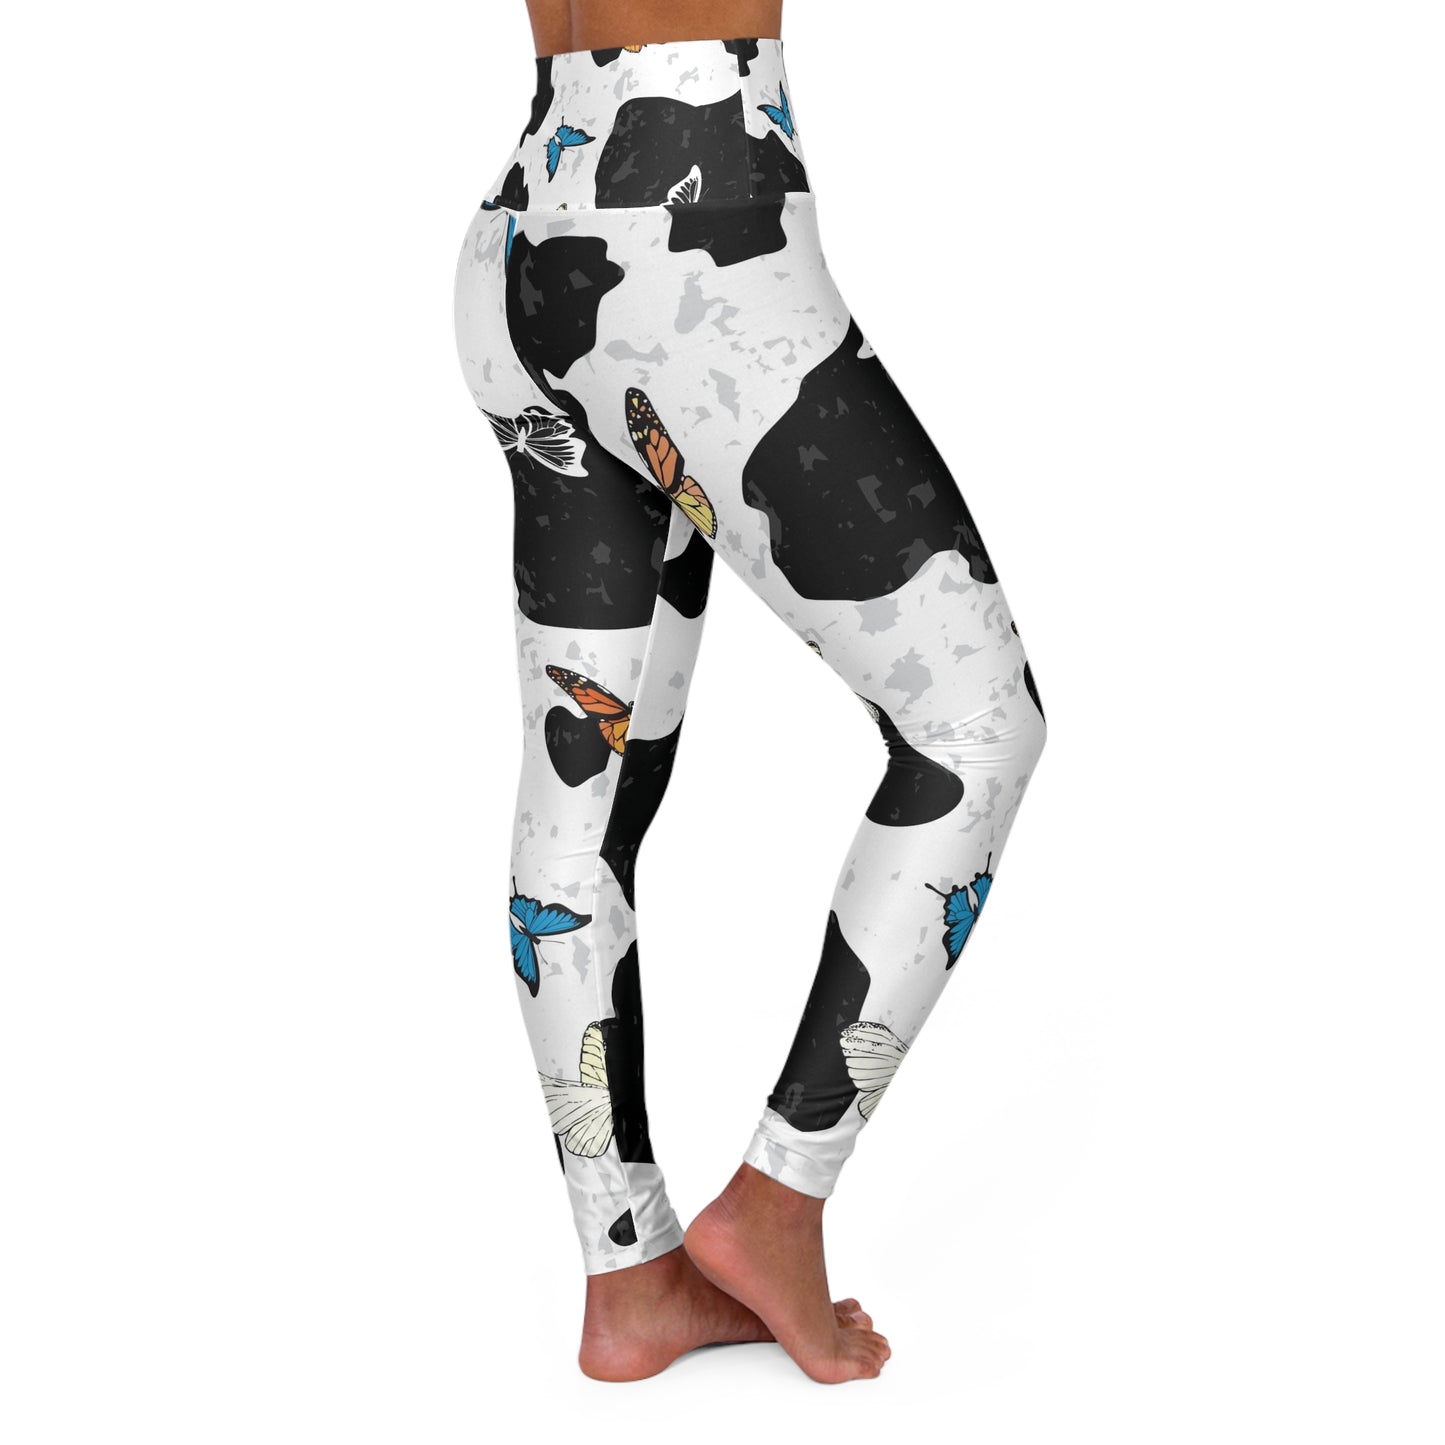 Cow print Leggings